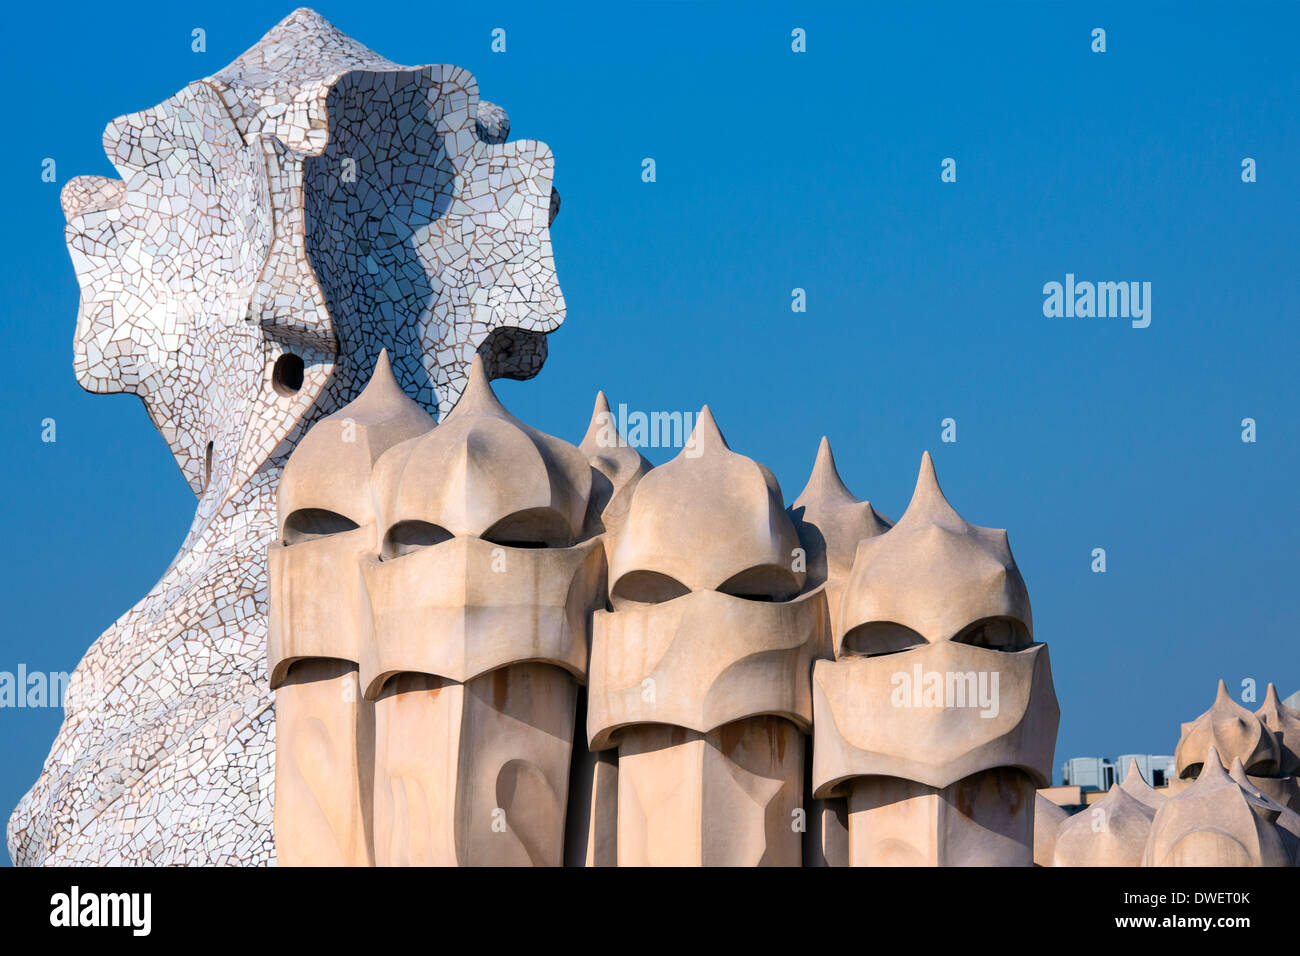 Gaudi, Casa Milia dans le quartier de l'Eixample de Barcelone - Catalogne Région de l'Espagne. Banque D'Images